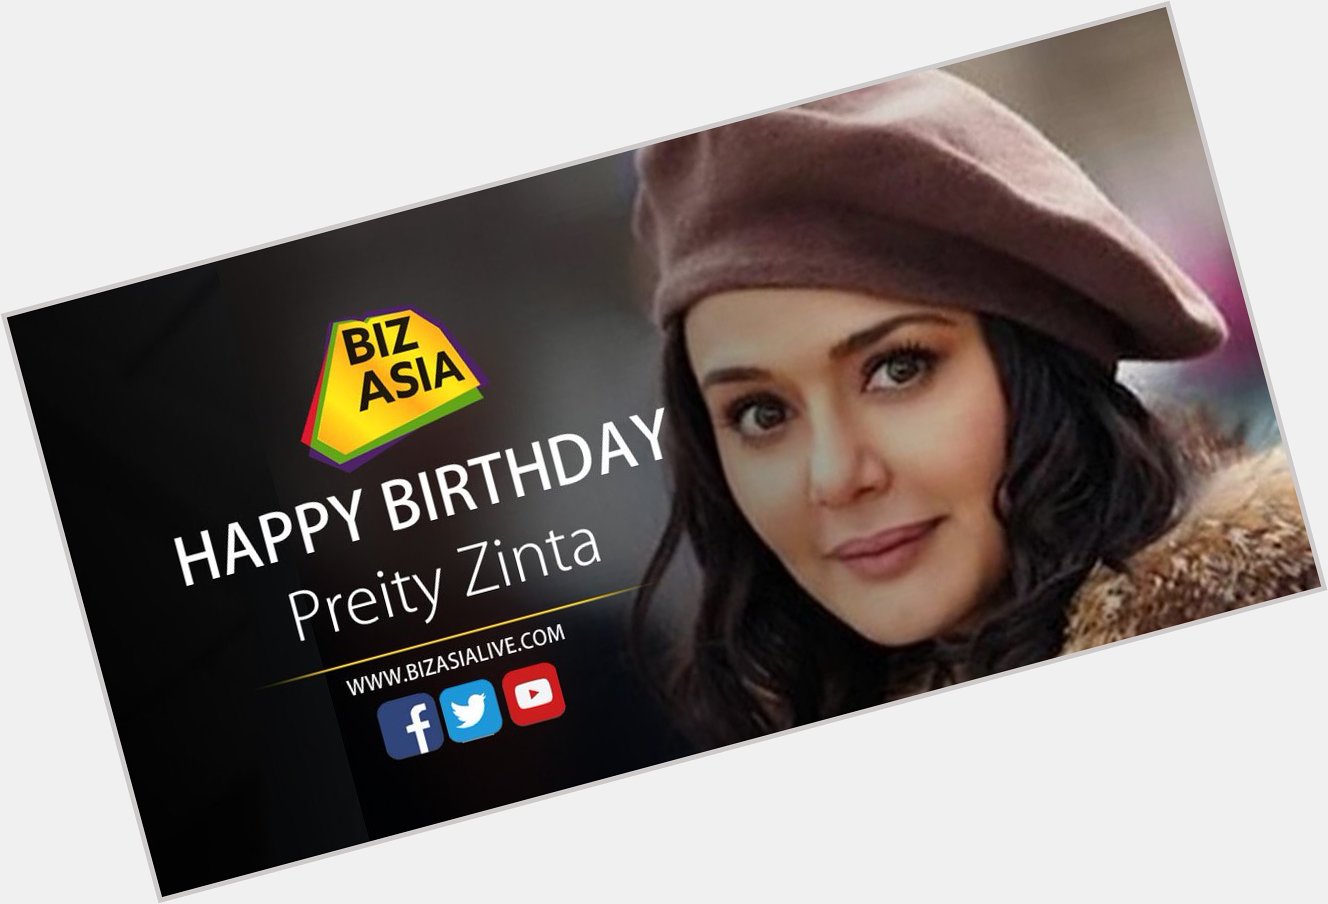  wishes Preity Zinta a happy birthday.  